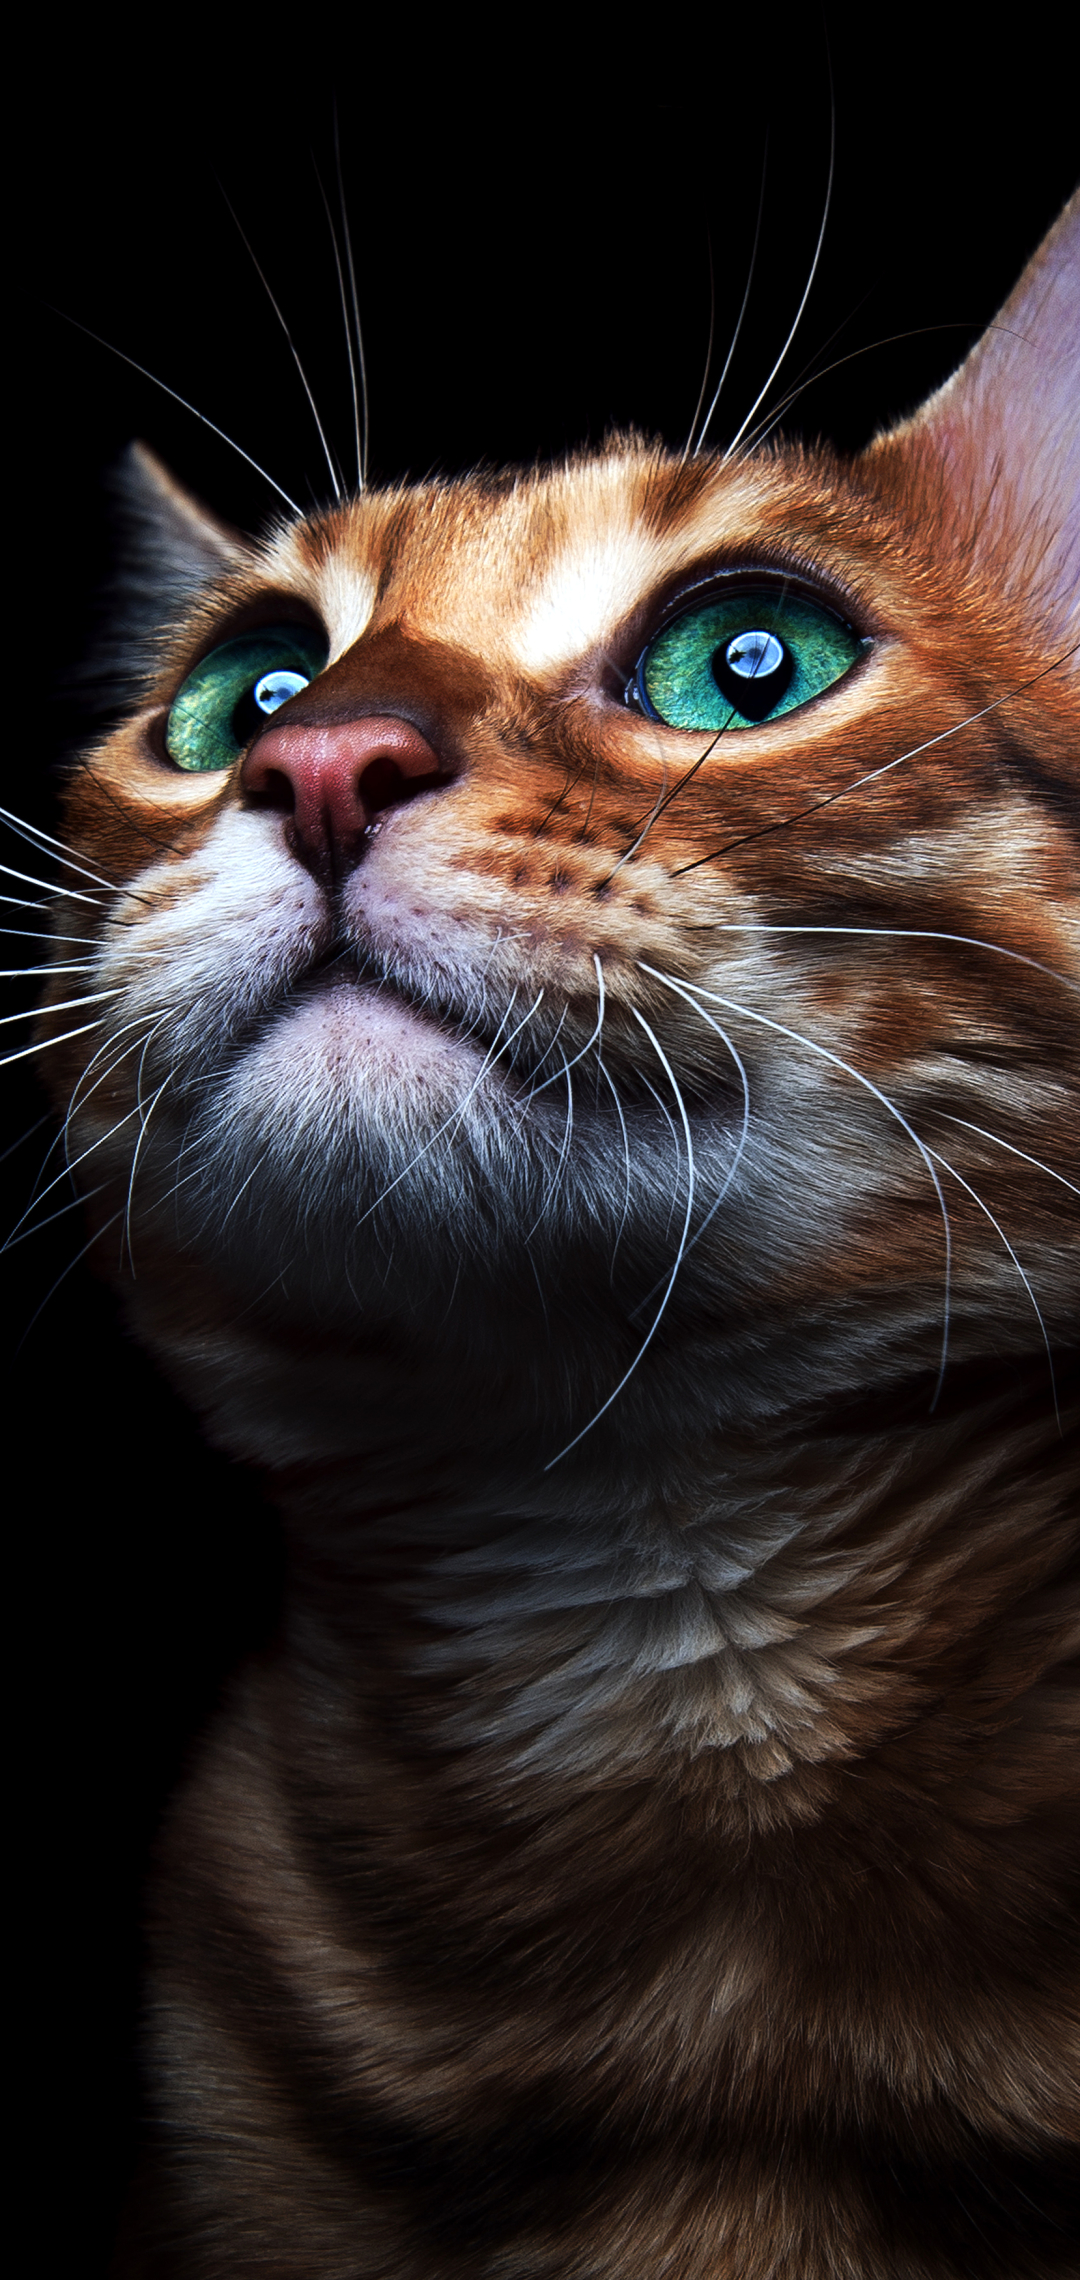 Descarga gratuita de fondo de pantalla para móvil de Animales, Gatos, Gato, Gatito, Ojos Verdes.